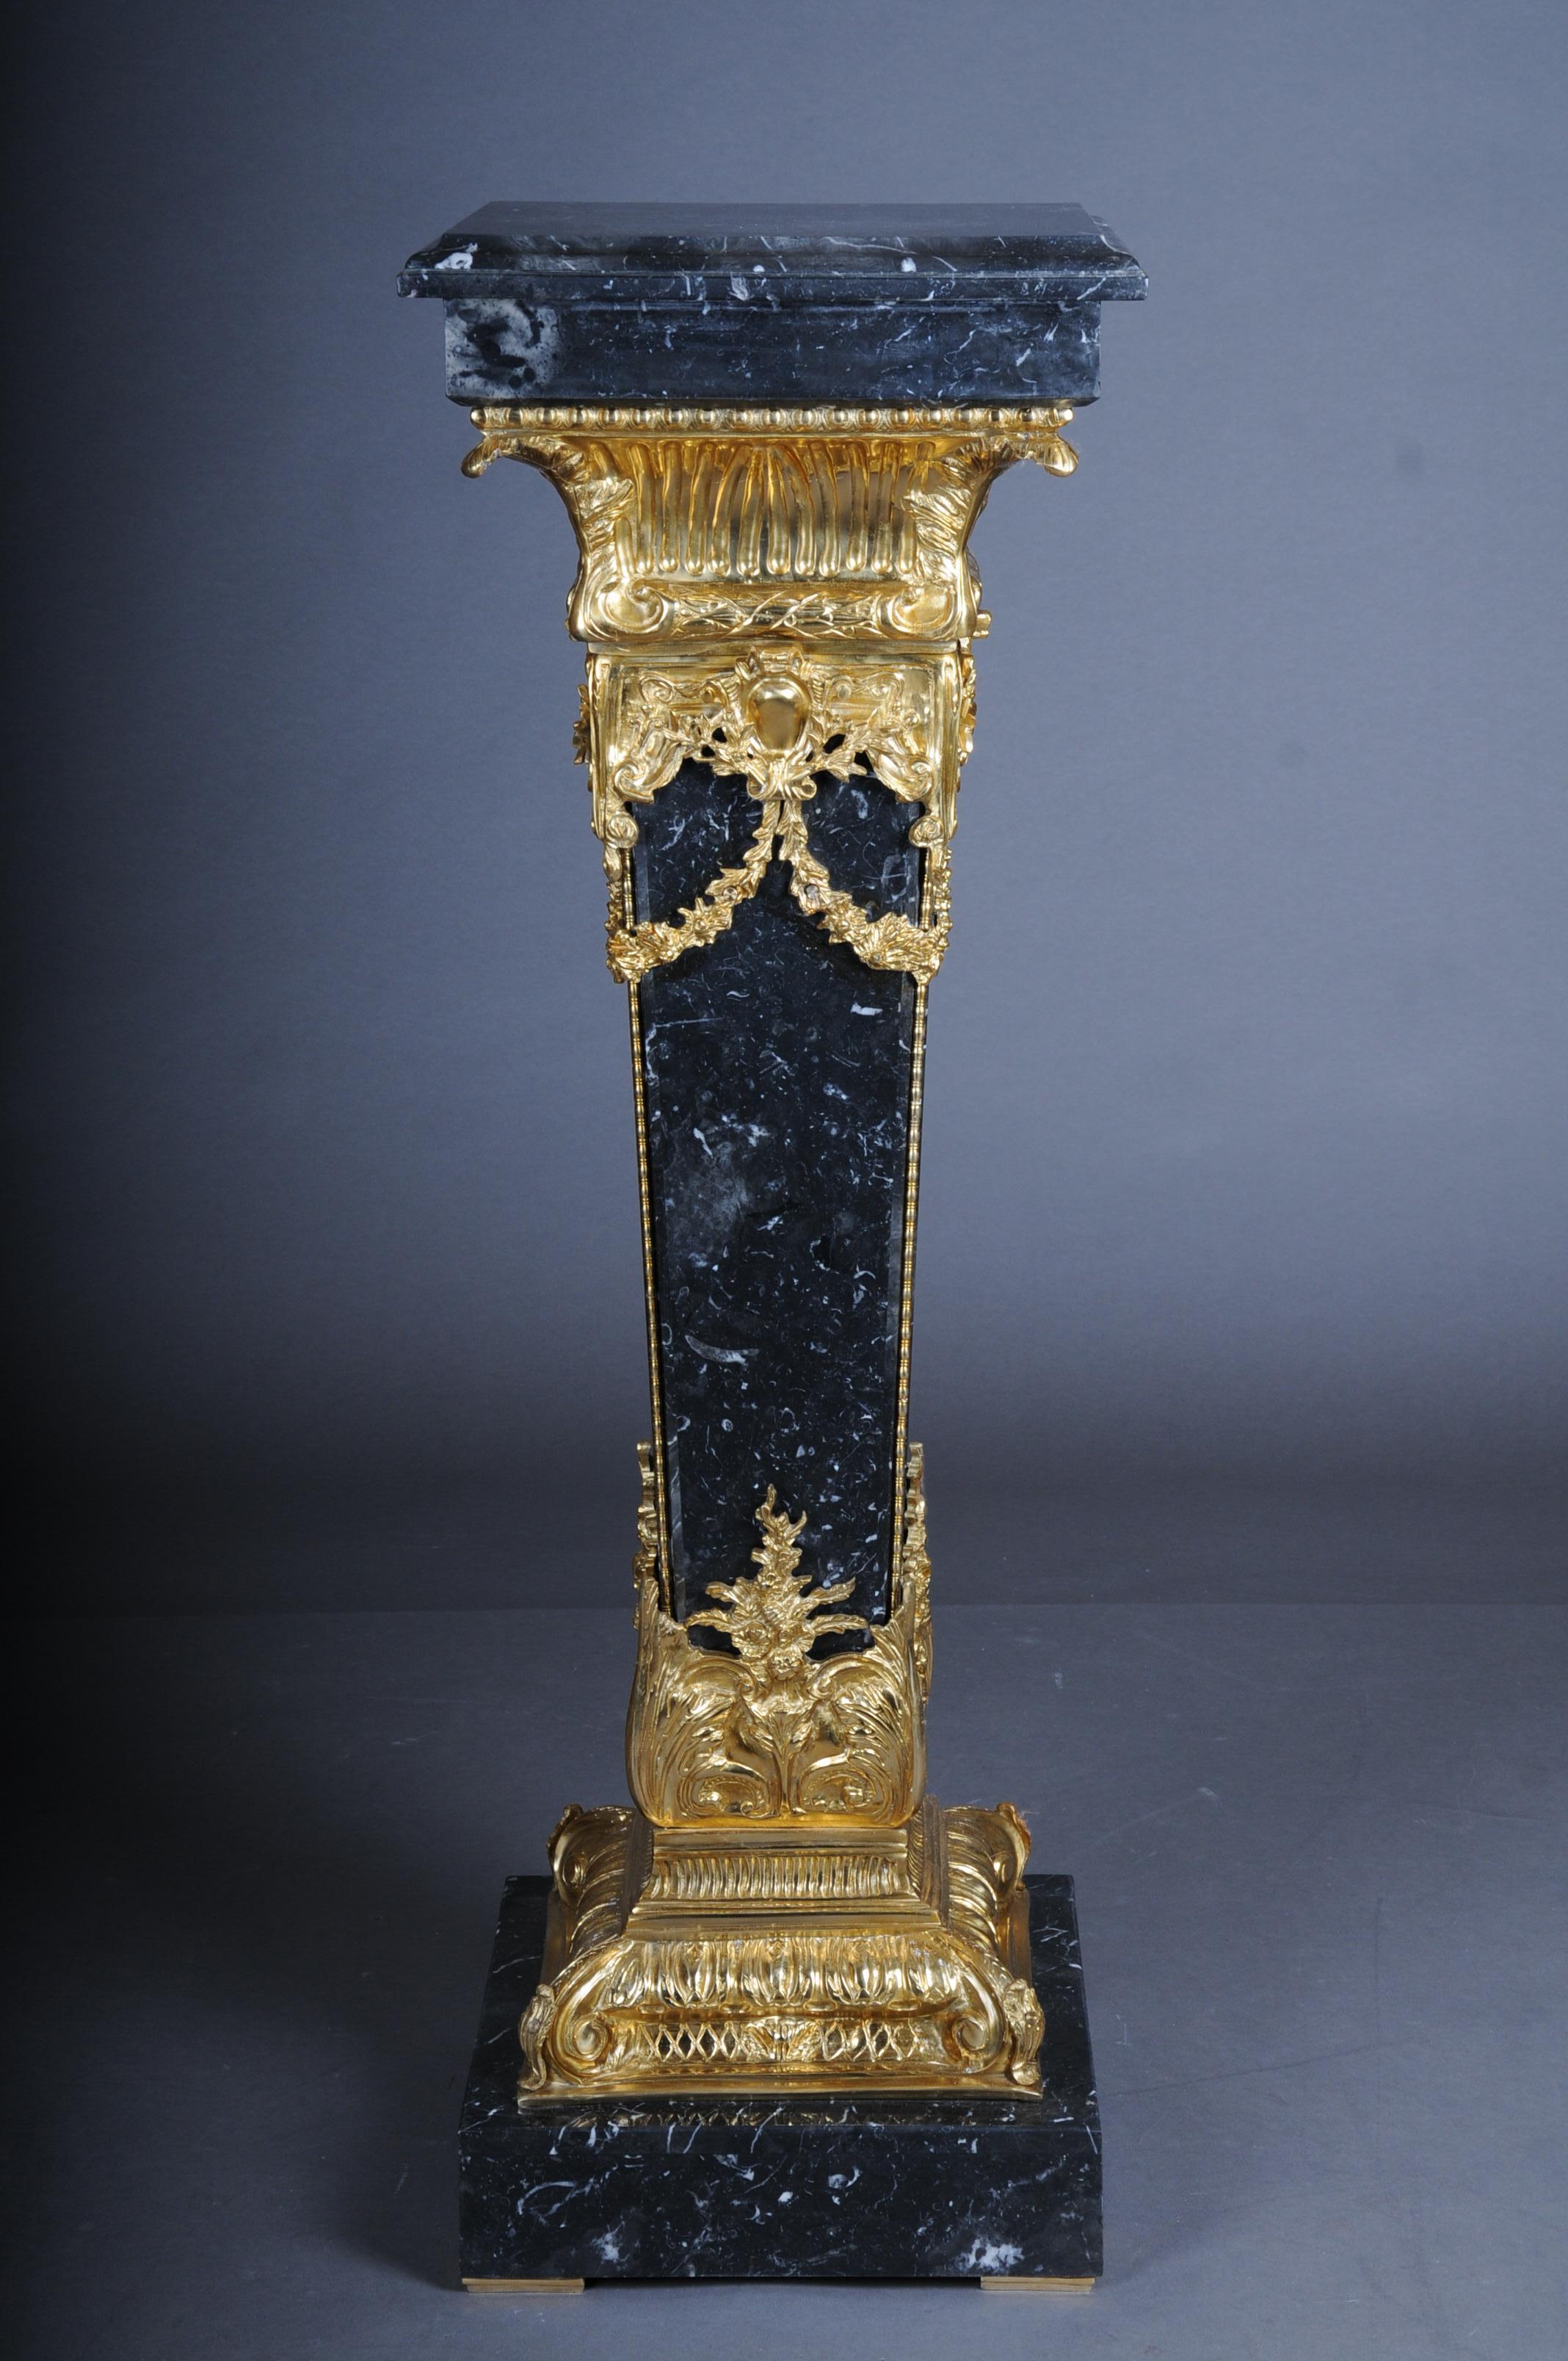 20. Jahrhundert Marmorsäule mit Bronze, Napoleon III

Beeindruckende und königliche Marmorsäule mit Bronzebeschlägen im Stil des Neoklassizismus. Eine solche Säule ist garantiert ein echter Blickfang und etwas ganz Besonderes.

